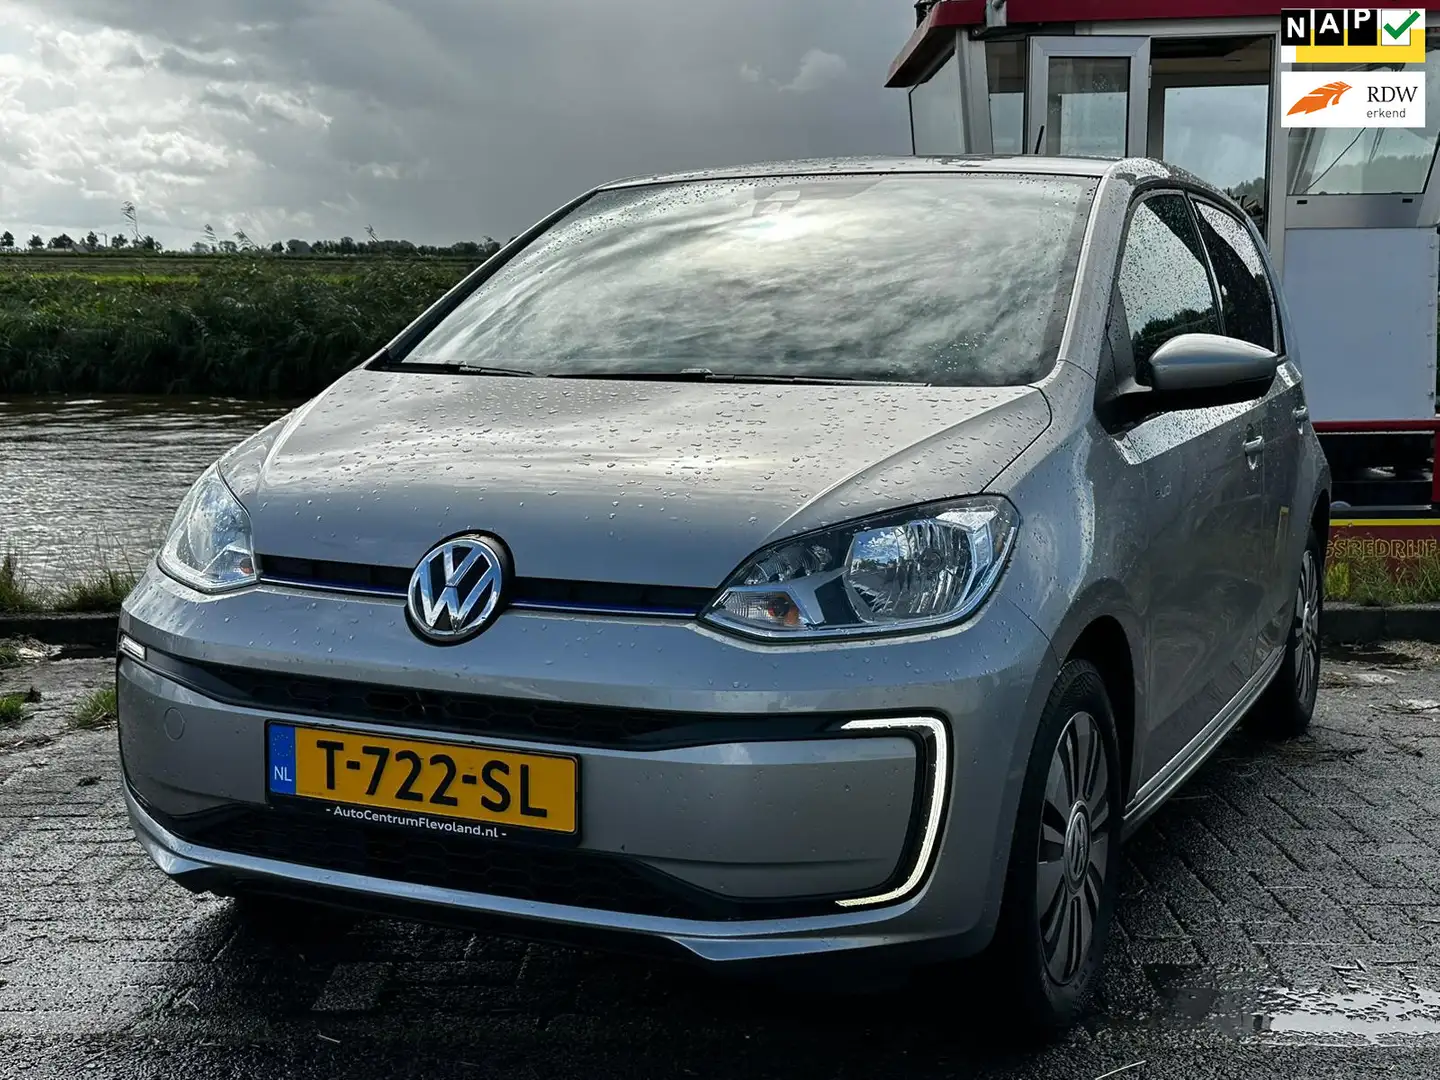 Volkswagen e-up! E-up! € 2000,- subsidie terug te krijgen bij aansc siva - 1